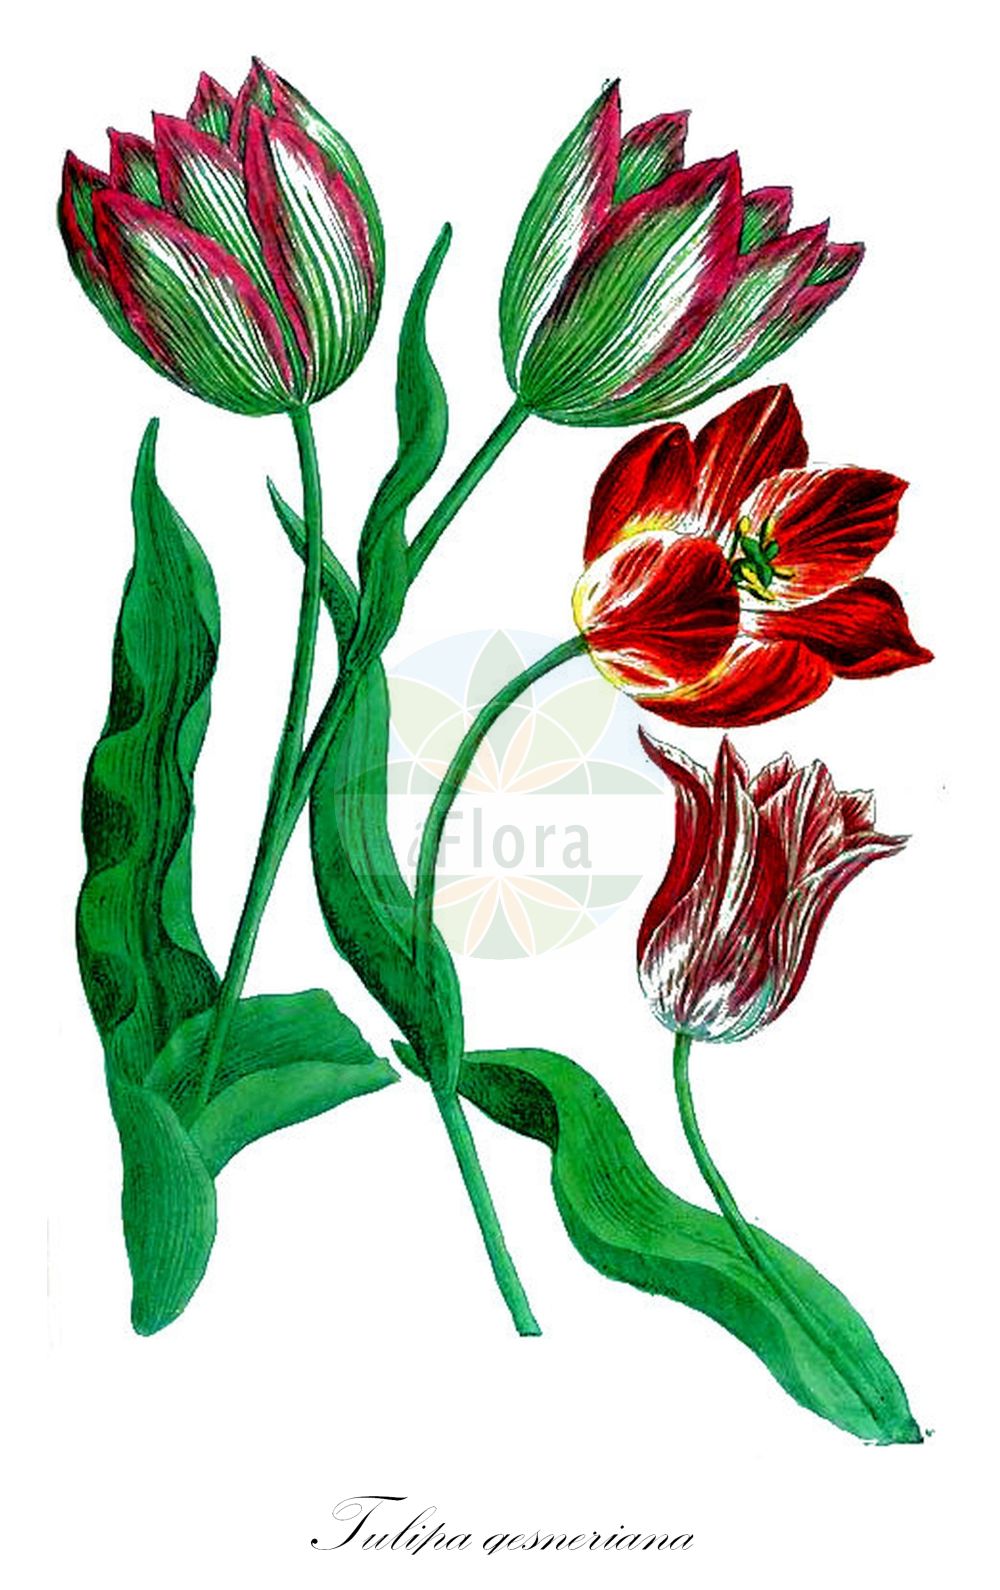 Historische Abbildung von Tulipa gesneriana (Garten-Tulpe - Garden Tulip). Das Bild zeigt Blatt, Bluete, Frucht und Same. ---- Historical Drawing of Tulipa gesneriana (Garten-Tulpe - Garden Tulip). The image is showing leaf, flower, fruit and seed.(Tulipa gesneriana,Garten-Tulpe,Garden Tulip,Tulipa acuminata,Tulipa aurea,Tulipa aximensis,Tulipa baldaccii,Tulipa bicolor,Tulipa billietiana,Tulipa bonarotiana,Tulipa campsopetala,Tulipa connivens,Tulipa cornuta,Tulipa coronaria,Tulipa didieri,Tulipa elegans,Tulipa etrusca,Tulipa fransoniana,Tulipa fulgens,Tulipa galatica,Tulipa gesneriana,Tulipa grengiolensis,Tulipa hortensis,Tulipa laciniata,Tulipa lurida,Tulipa lutea,Tulipa marjolletii,Tulipa mauriana,Tulipa mauriannensis,Tulipa mauritiana,Tulipa media,Tulipa montisandrei,Tulipa neglecta,Tulipa passeriniana,Tulipa perrieri,Tulipa planifolia,Tulipa platystigma,Tulipa pubescens,Tulipa repens,Tulipa retroflexa,Tulipa saracenica,Tulipa scabriscapa,Tulipa scardica,Tulipa segusiana,Tulipa serotina,Tulipa sommieri,Tulipa spathulata,Tulipa stenopetala,Tulipa stricta,Tulipa unguiculata,Tulipa variopicta,Tulipa viridiflora,Tulipa vitellina,Garten-Tulpe,Garden Tulip,Didier's Tulip,Tulipa,Tulpe,Tulip,Liliaceae,Liliengewächse,Lily family,Blatt,Bluete,Frucht,Same,leaf,flower,fruit,seed,Weinmann (1737-1745))